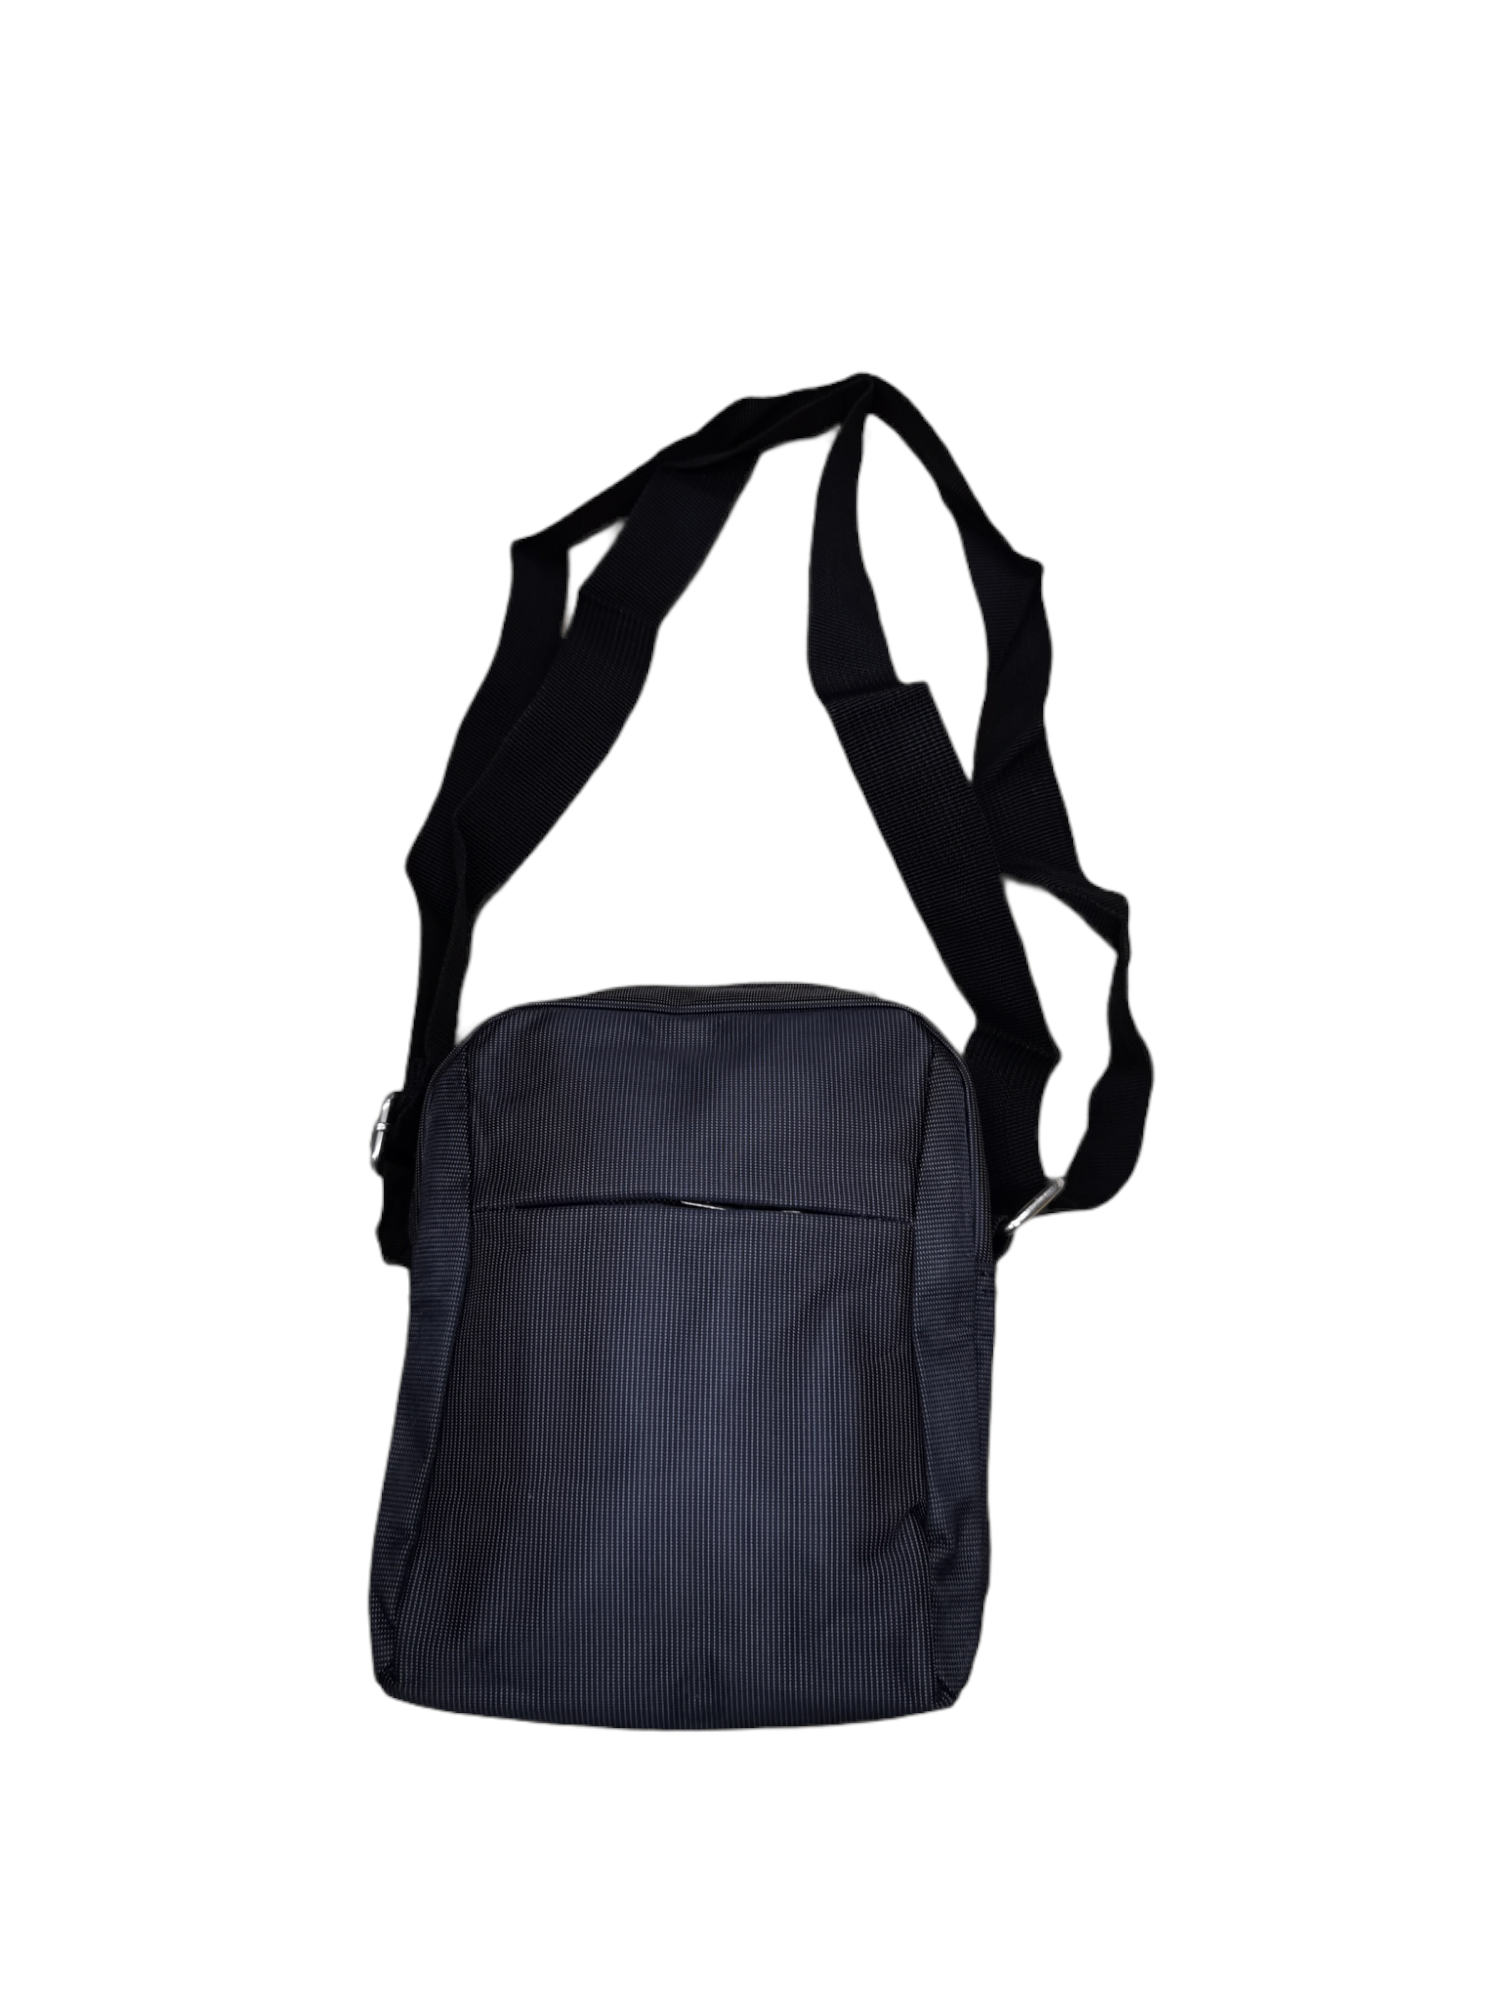 Men's shoulder bags (x6)